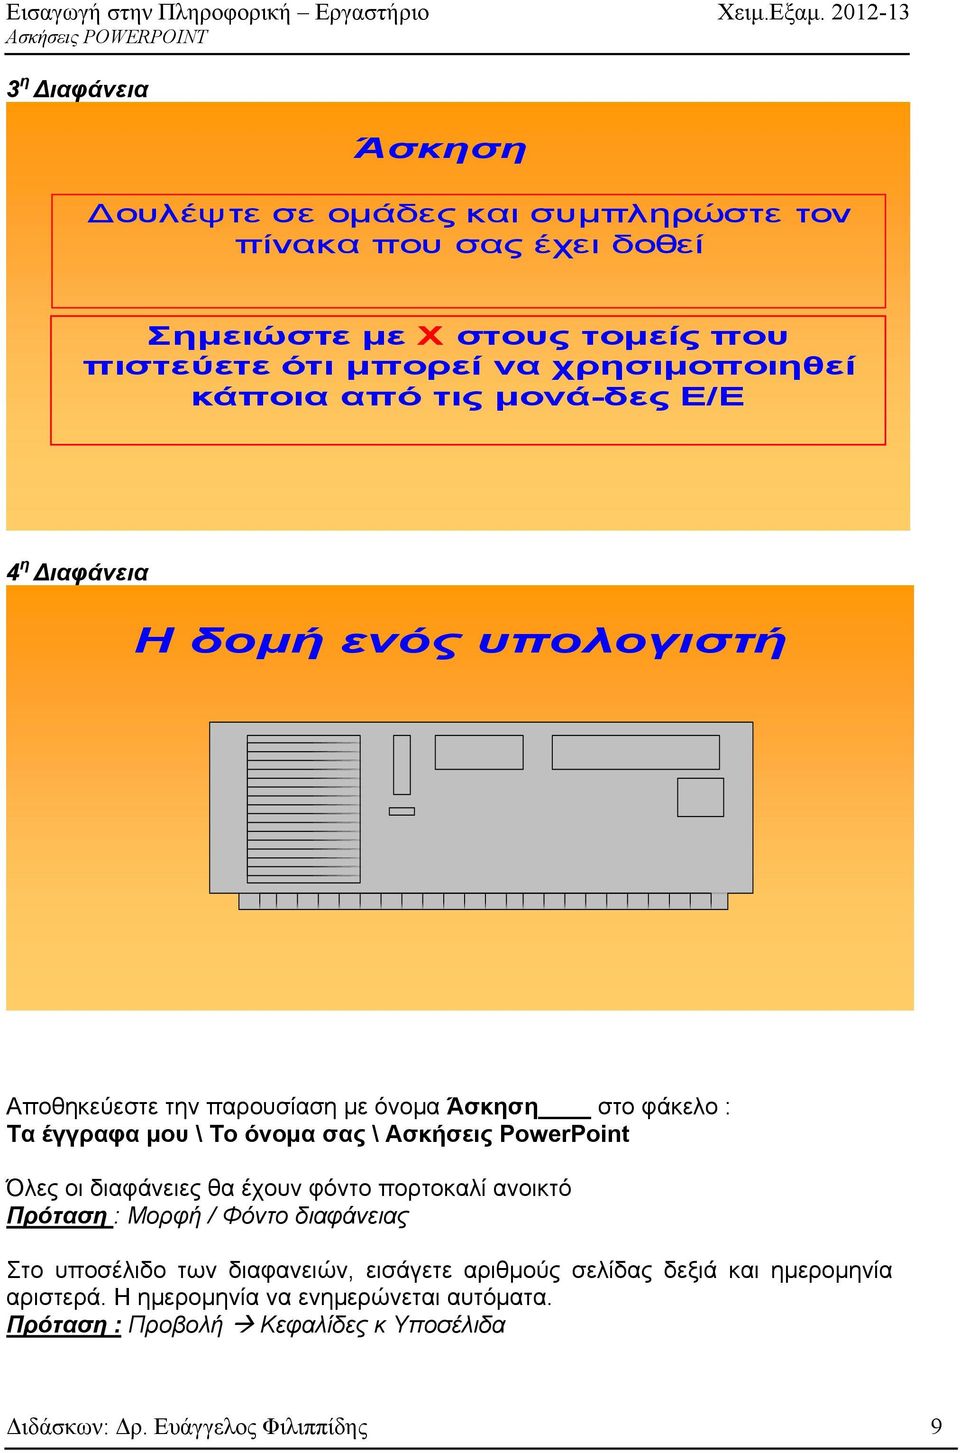 Ασκήσεις PowerPoint Όλες οι διαφάνειες θα έχουν φόντο πορτοκαλί ανοικτό Πρόταση : Μορφή / Φόντο διαφάνειας Στο υποσέλιδο των διαφανειών, εισάγετε αριθμούς